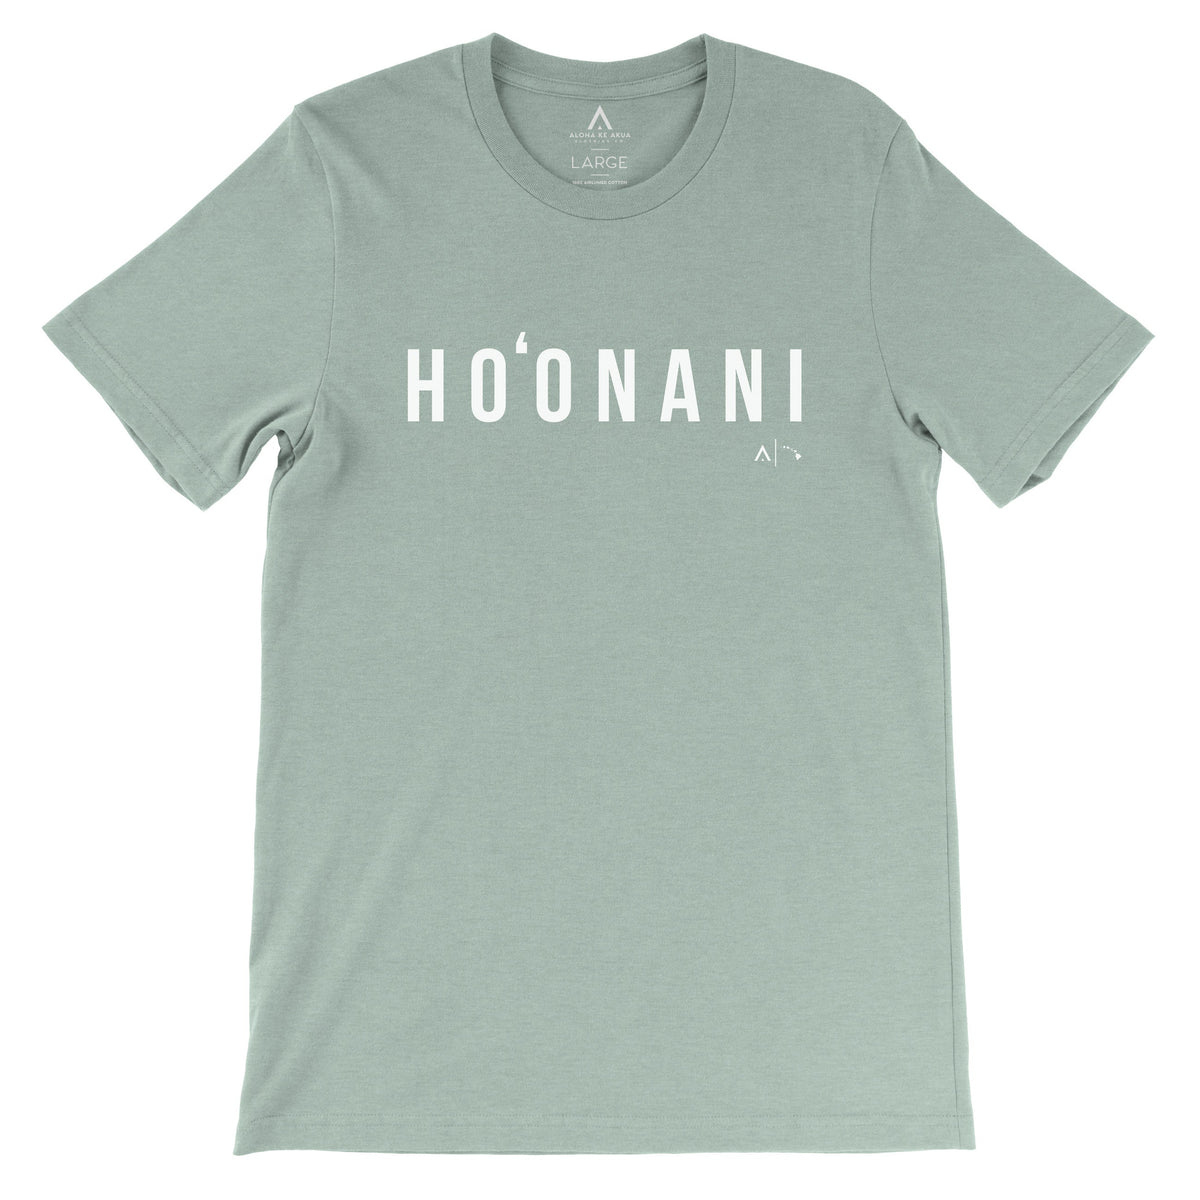 Pop-Up Mākeke - Aloha Ke Akua Clothing - Ho‘onani Men&#39;s Short Sleeve T-Shirt - Heather Sage - Front View